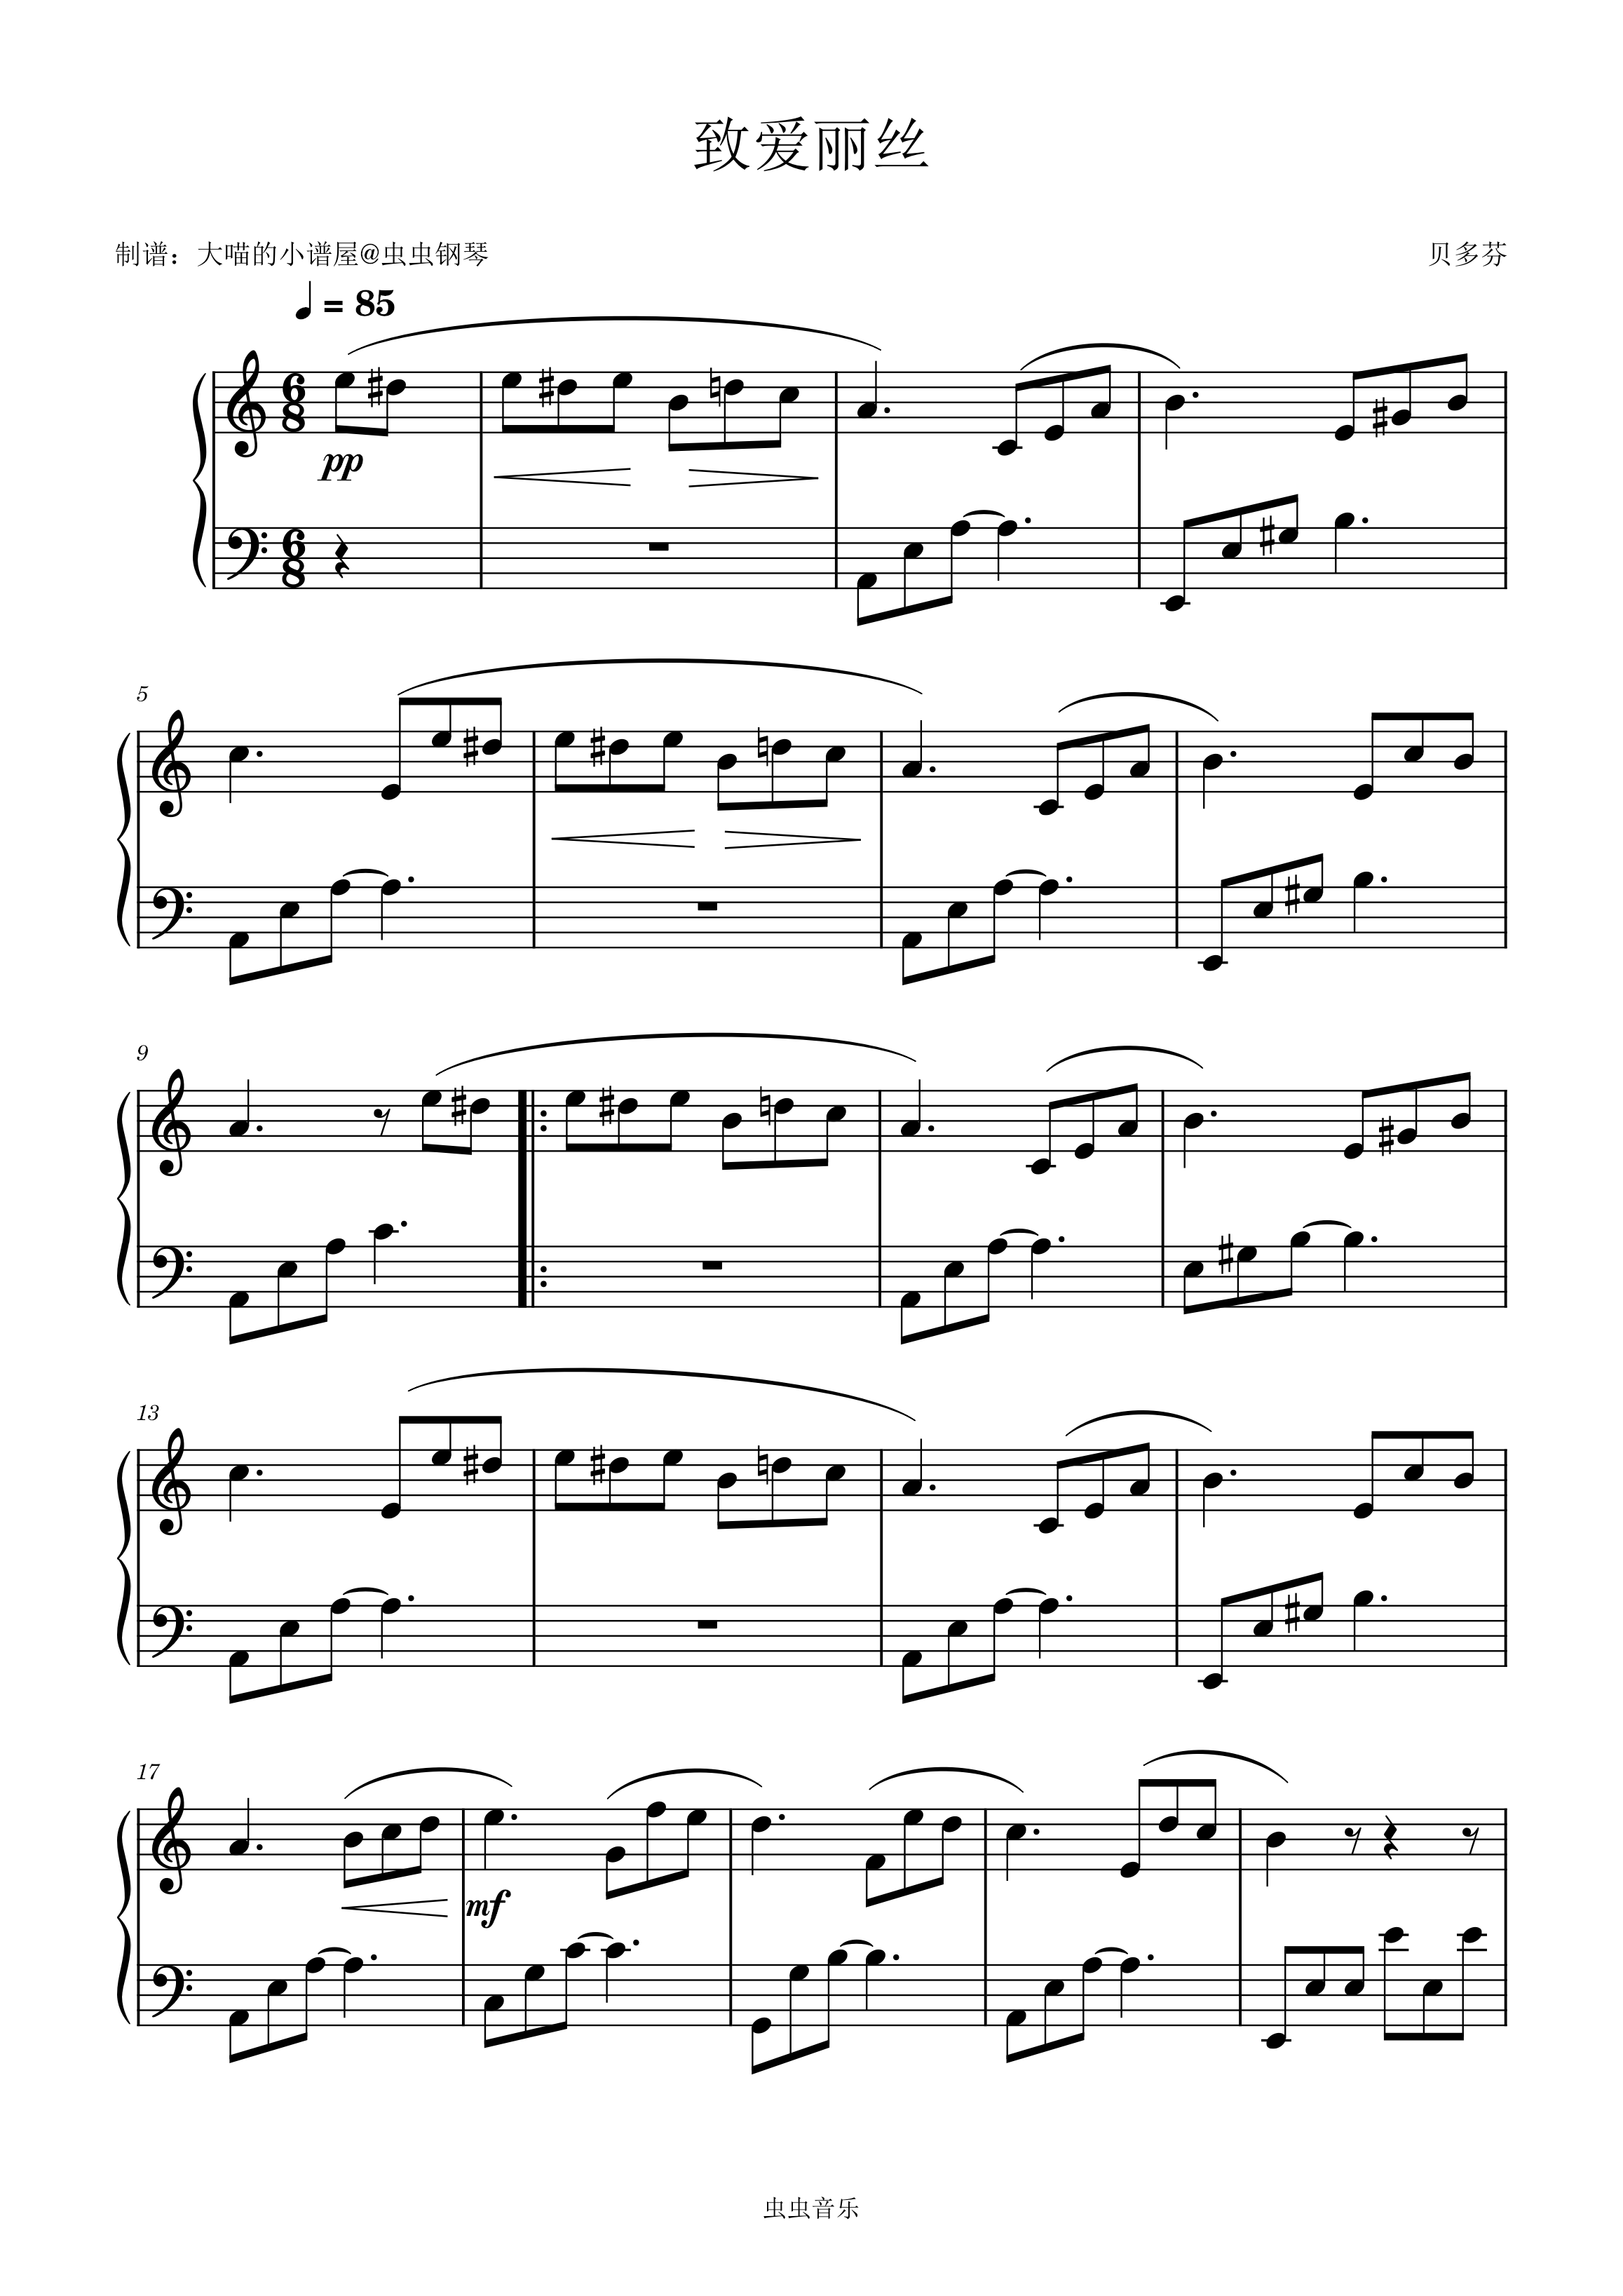 致爱丽丝（简易版）-贝多芬 - 钢琴谱 - 环球钢琴网